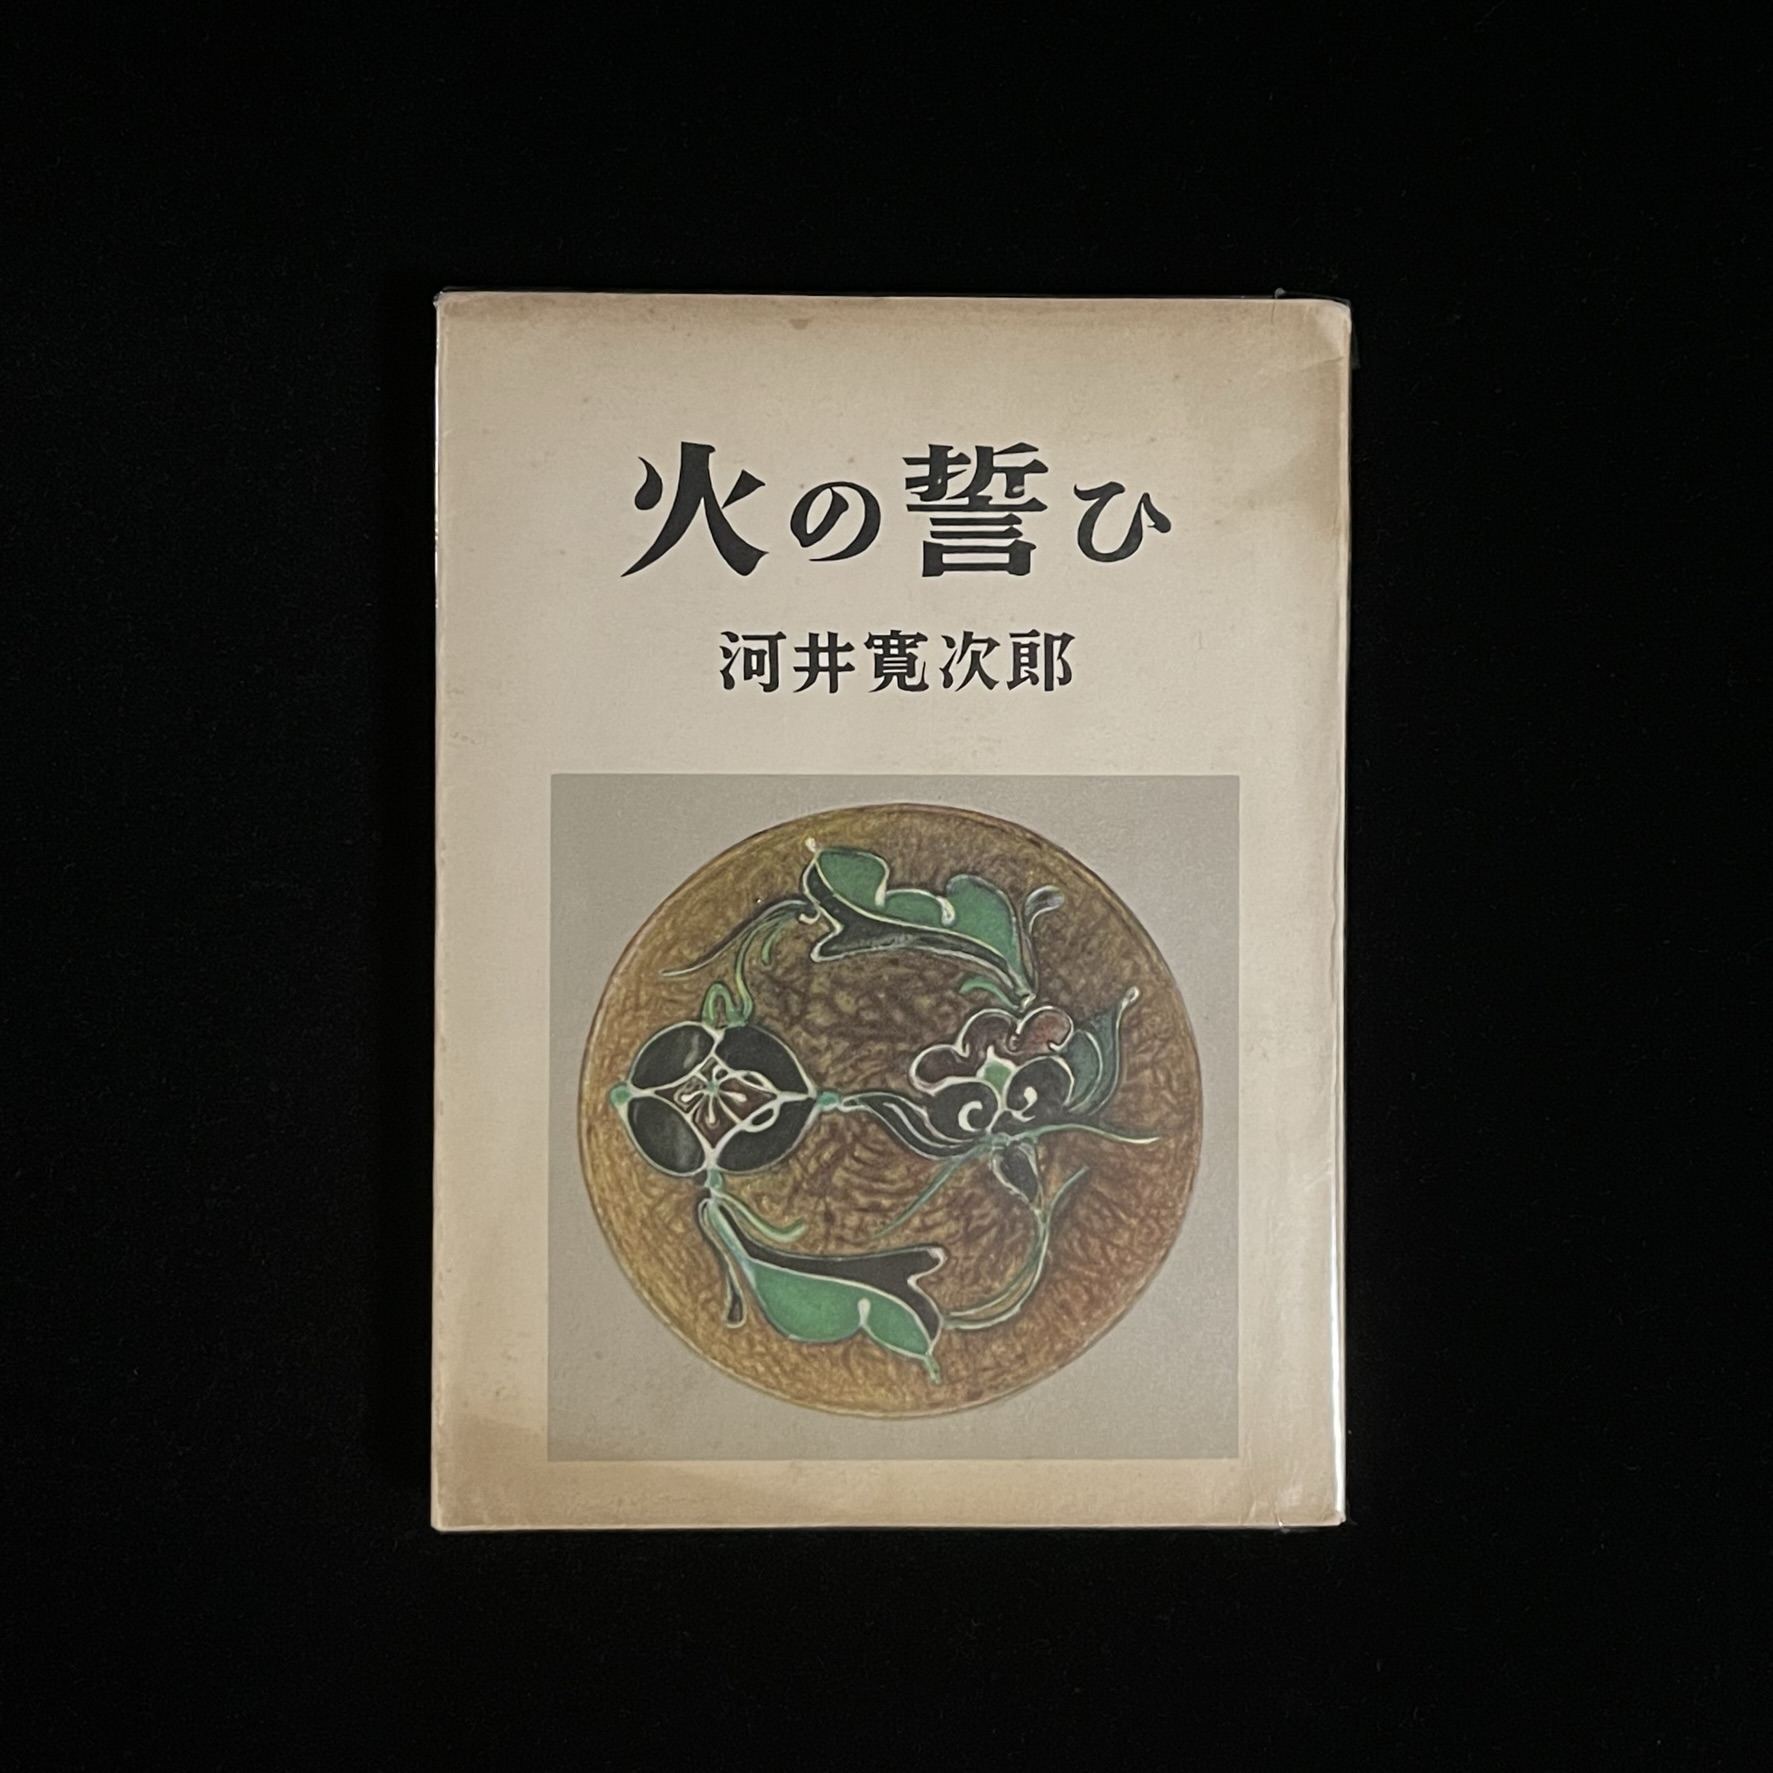 『火の誓ひ』の本の表紙の写真。河井寛次郎さんの作品の花鉢の写真が載っています。